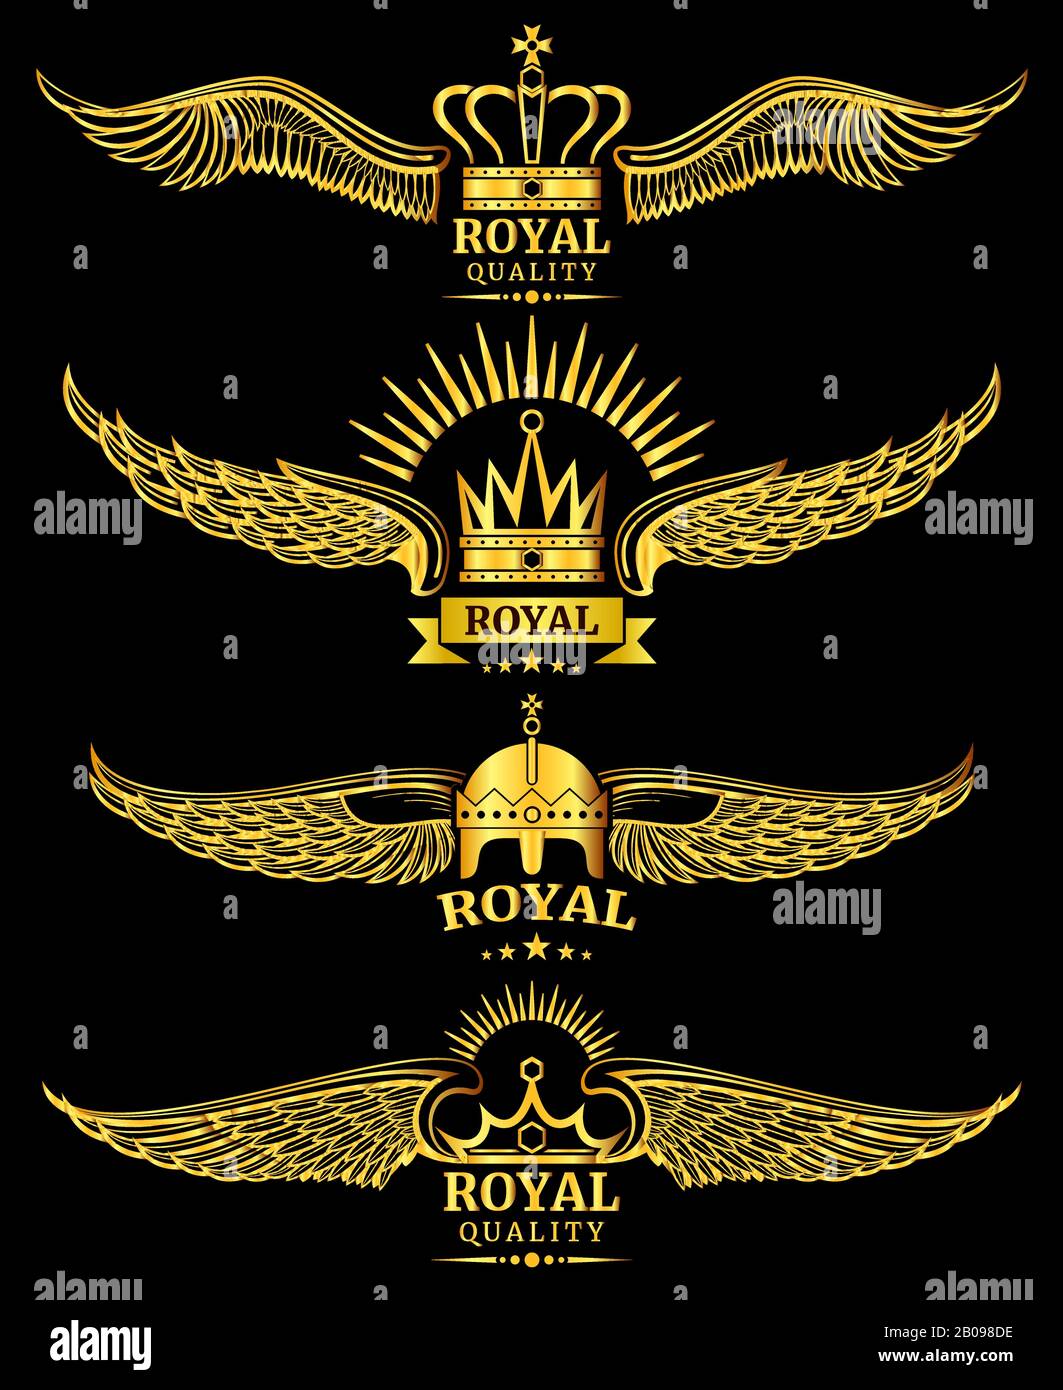 Illustration des modèles de logo de luxe de qualité royale de couronne à aile vectorielle dorée Illustration de Vecteur